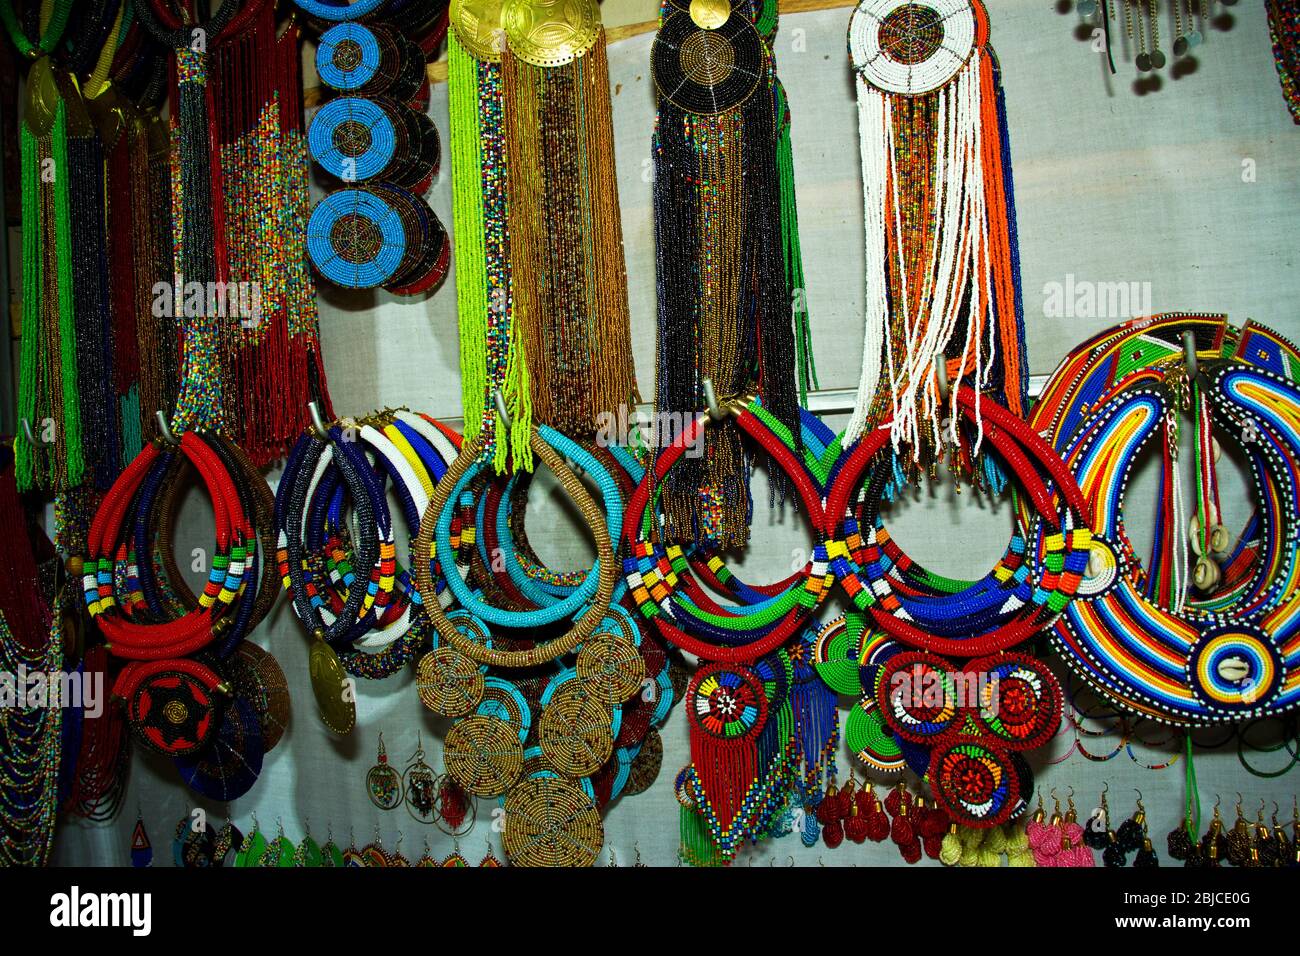 Bijoux fantaisie de beadwork basés sur les dessings traditionnels de masai et l'utilisation de la couleur sont une forme très populaire de curio acheté par les touristes à l'Afrique de l'est. Banque D'Images